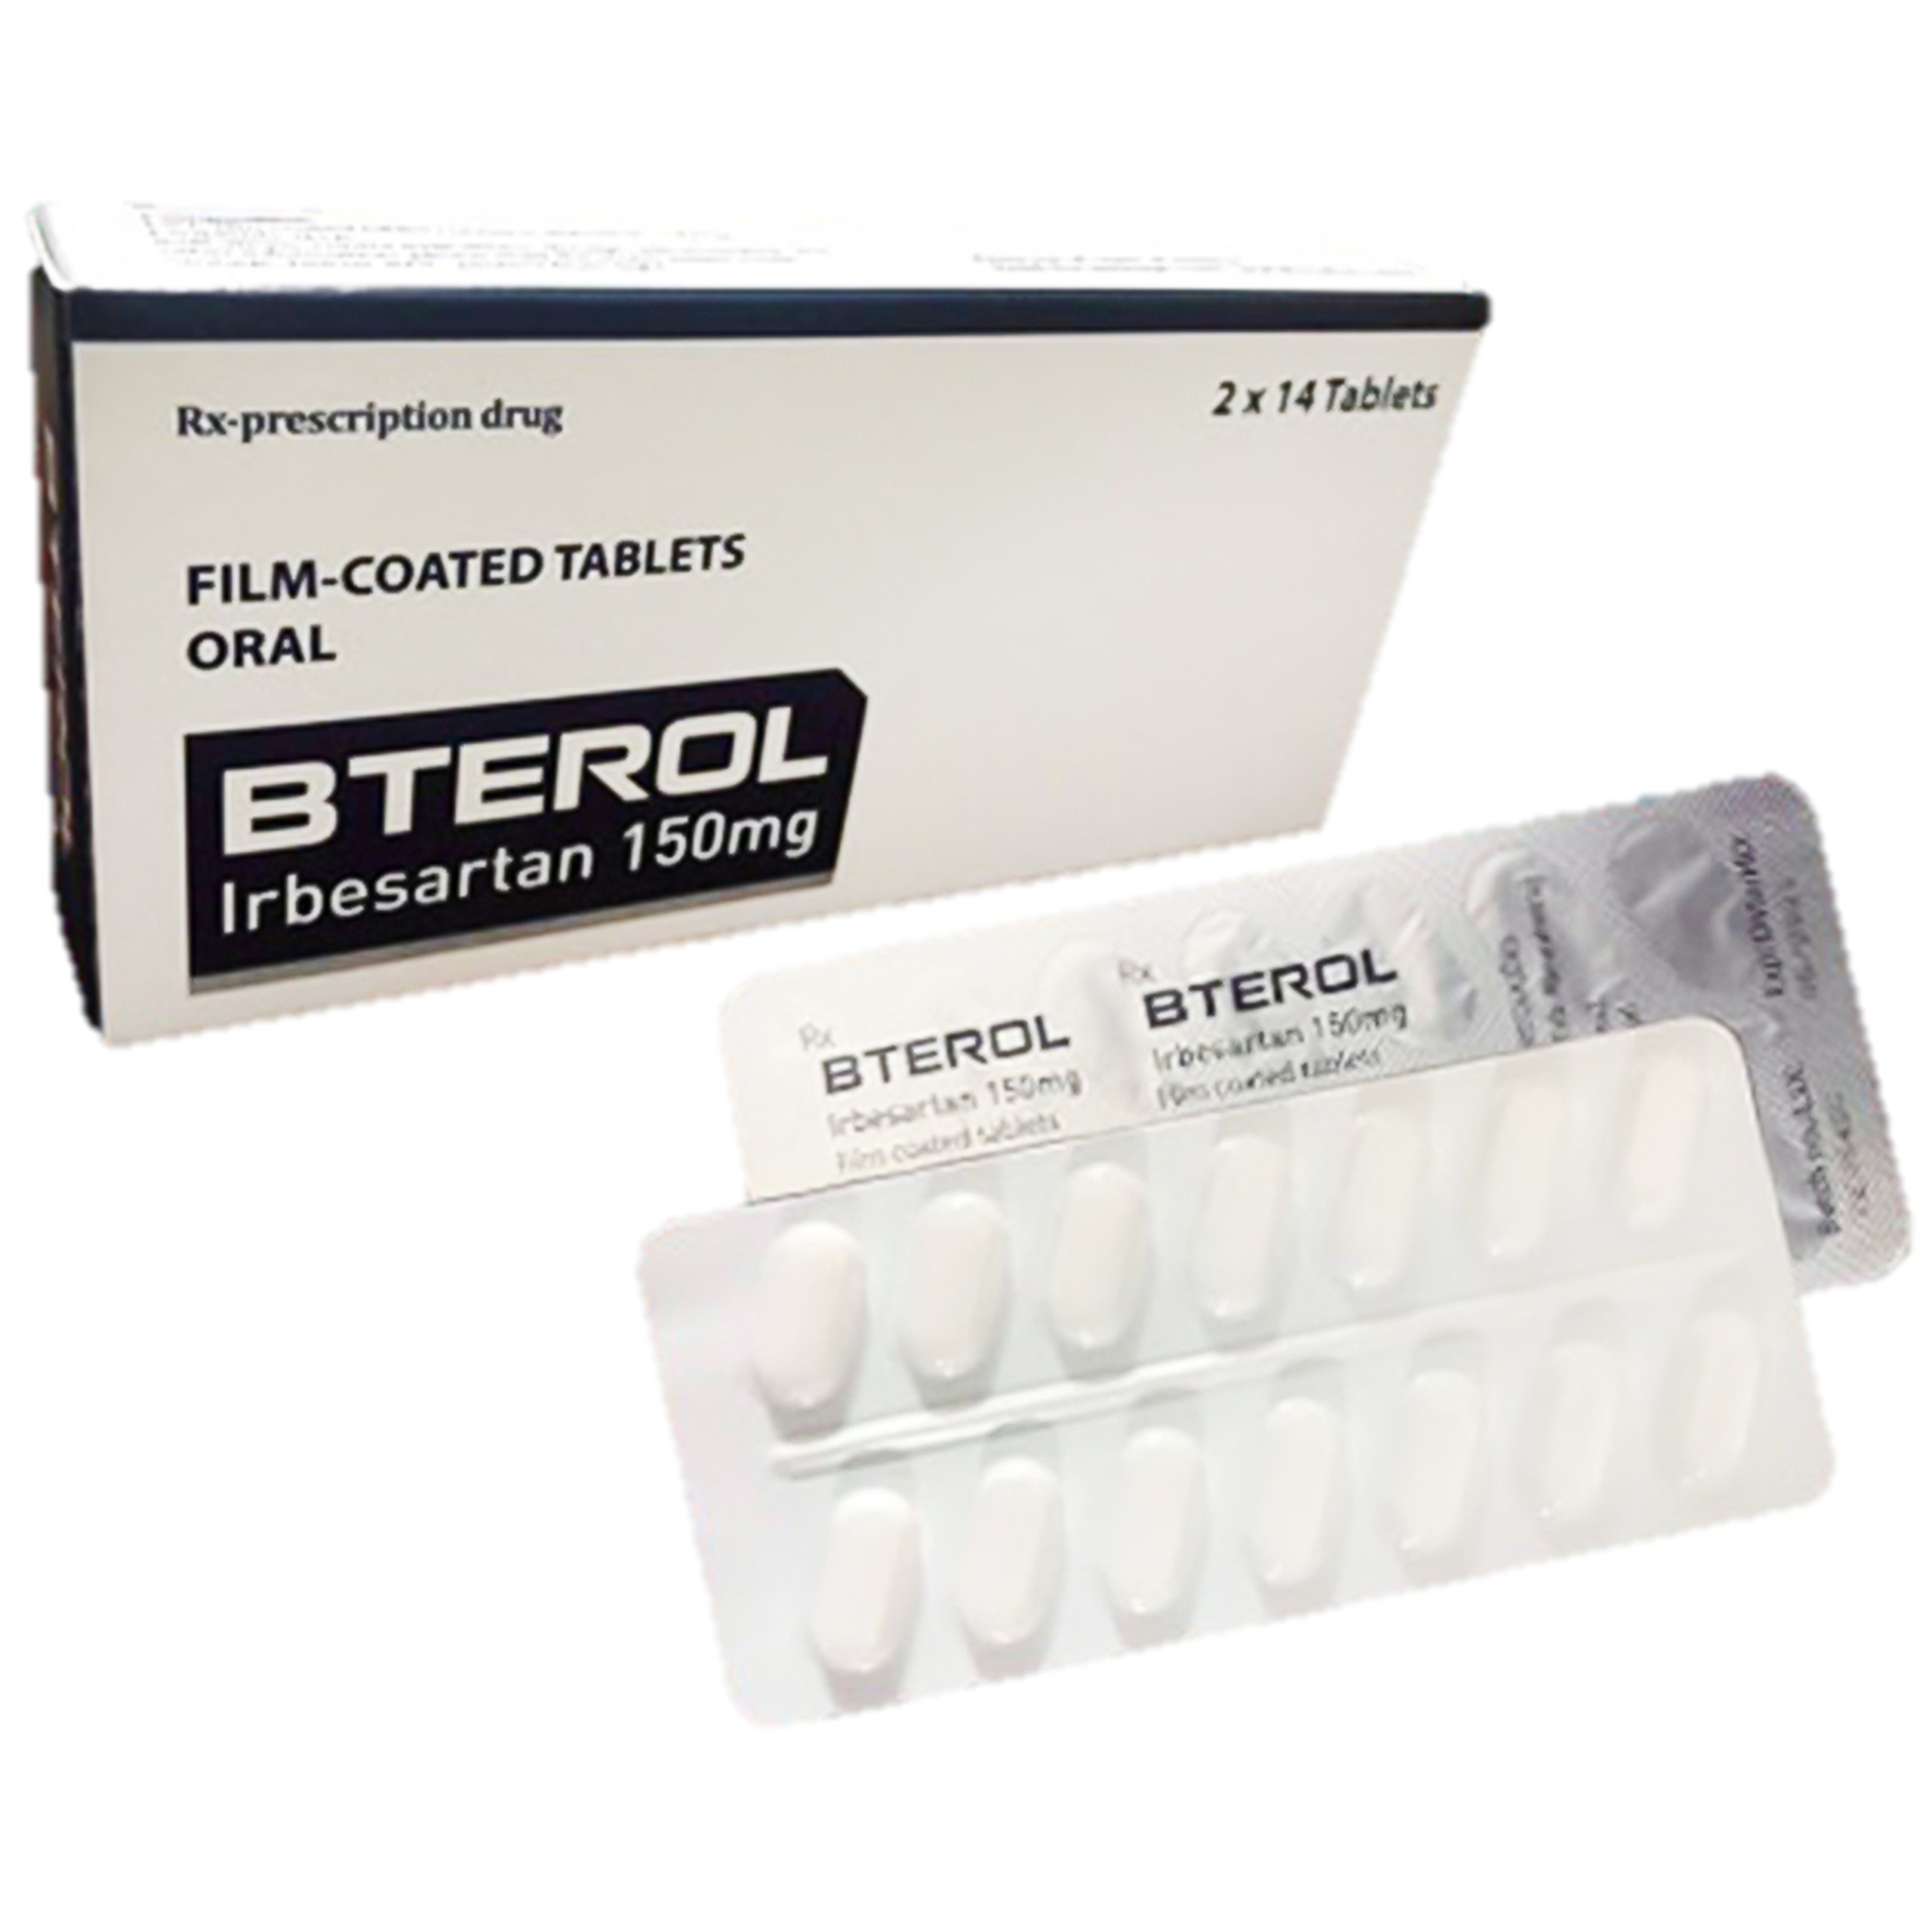 Thuốc Bterol 150mg Atlantic điều trị tăng huyết áp nguyên phát (2 vỉ x 14 viên)